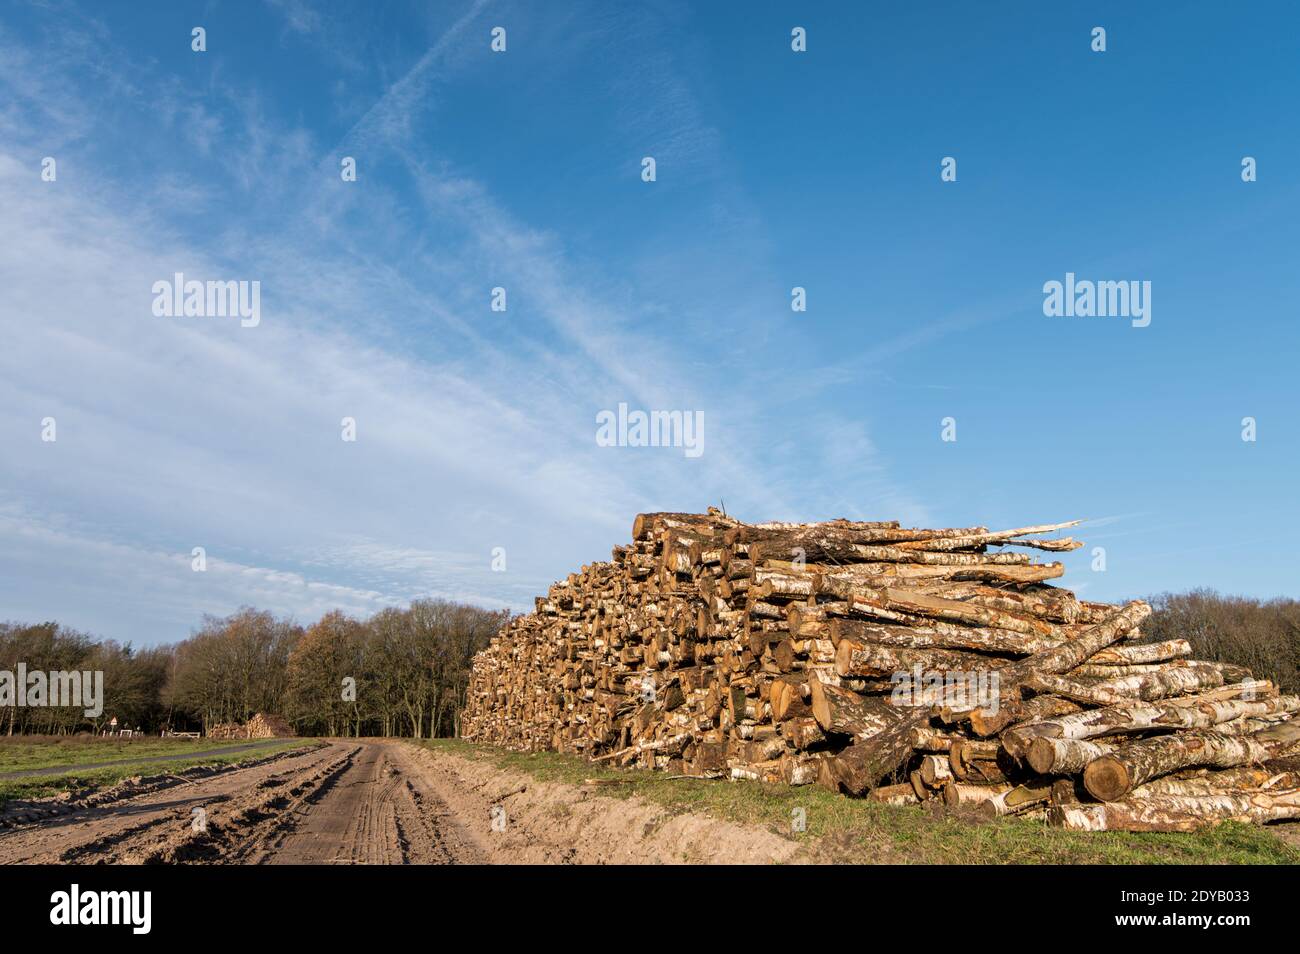 Haufen mit Baumstämmen nach dem Holzeinschlag und Entwaldung in der Natur Beibehalten Stockfoto